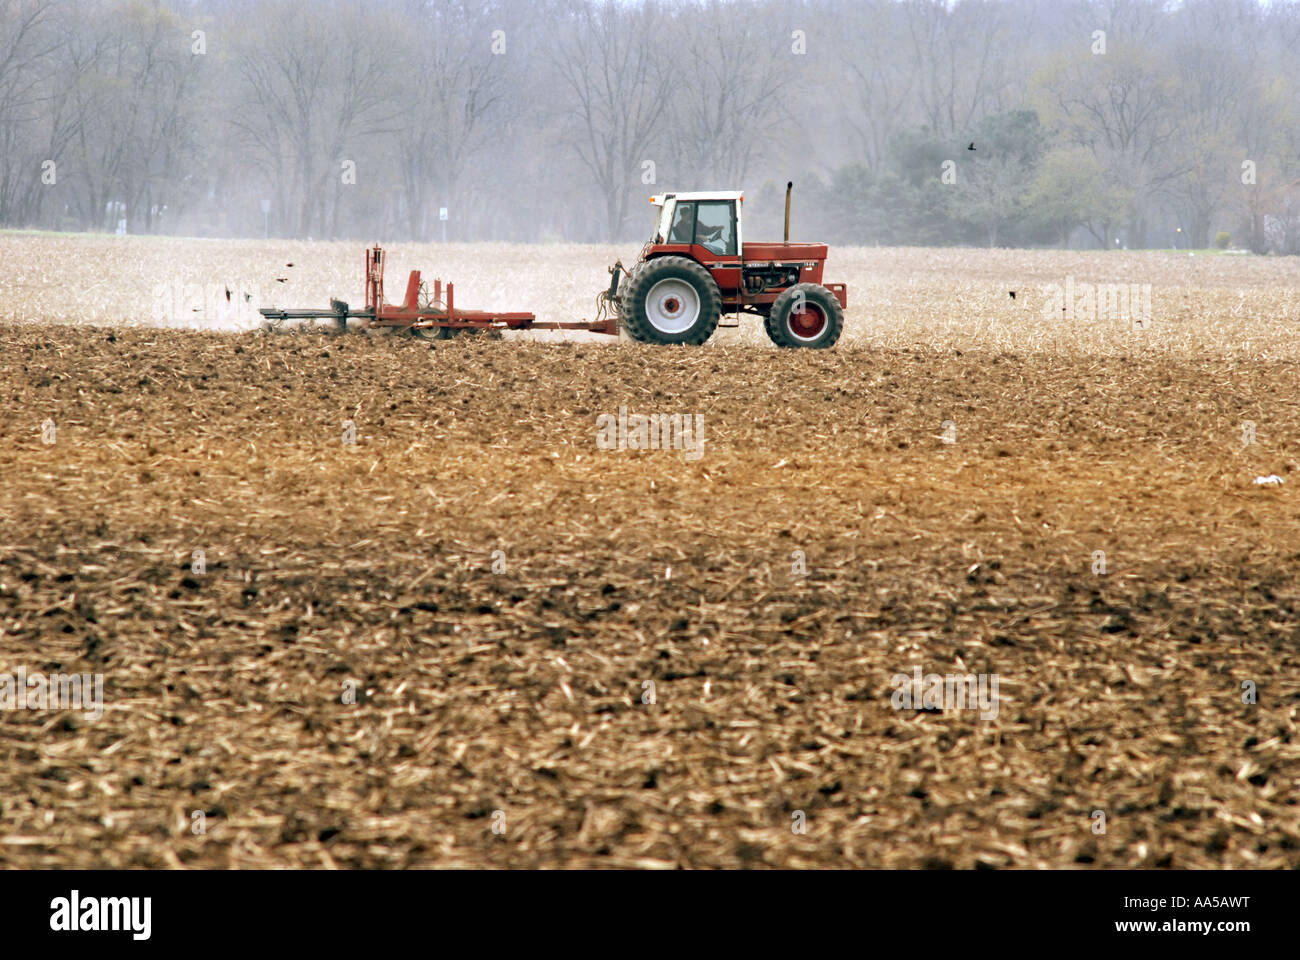 Un agriculteur laboure un champ avant de planter une récolte de maïs dans le midwest des États-Unis Banque D'Images